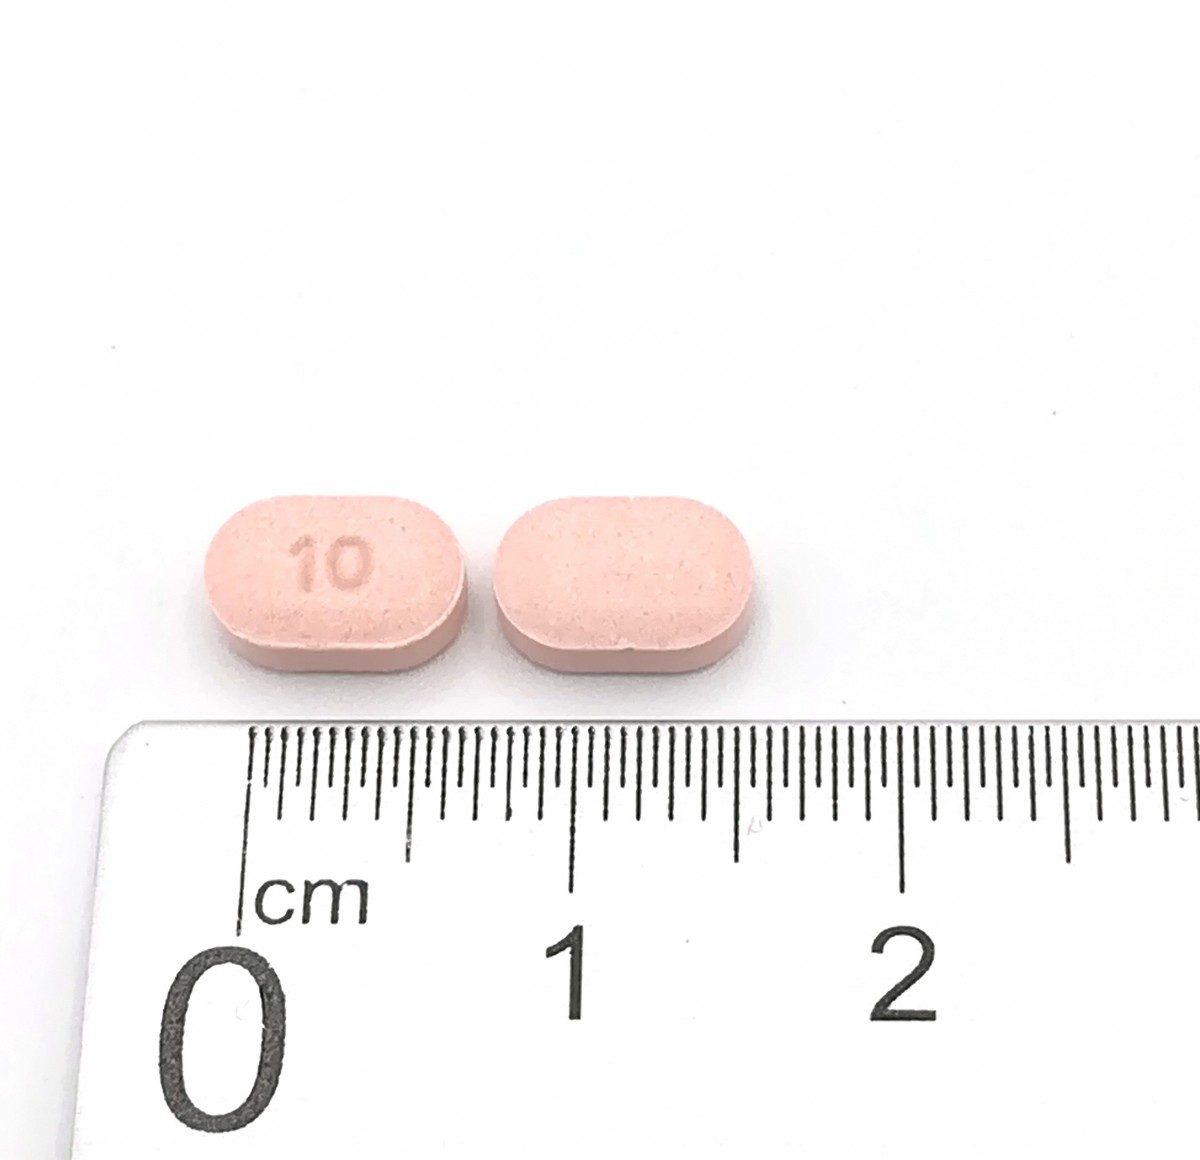 ARIPIPRAZOL NORMON 10 MG COMPRIMIDOS EFG , 100 comprimidos fotografía de la forma farmacéutica.